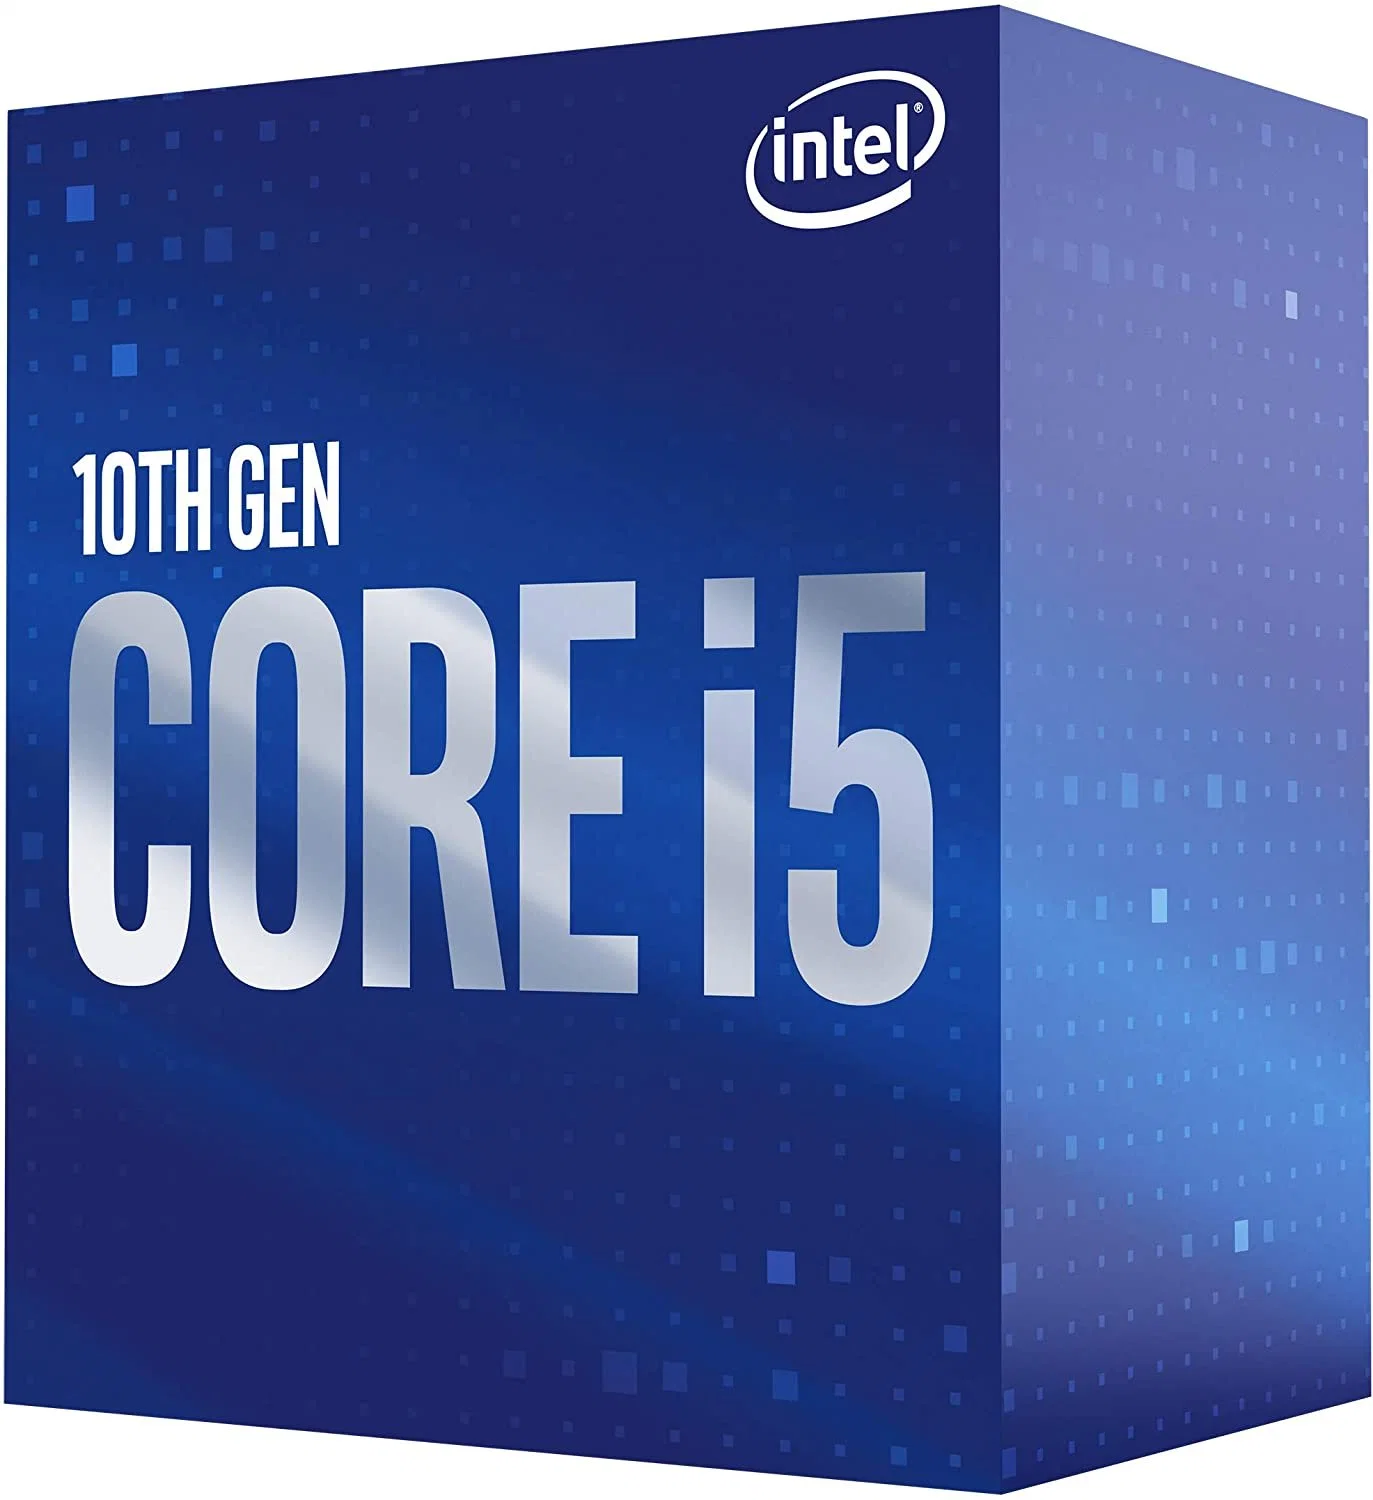 Процессор Intel Core I5-10400 процессор для настольных ПК 6 ядер до 4,3 Ггц в корпусе LGA1200 (Intel серии 400 набор микросхем) 65W, номер модели: Bx8070110400